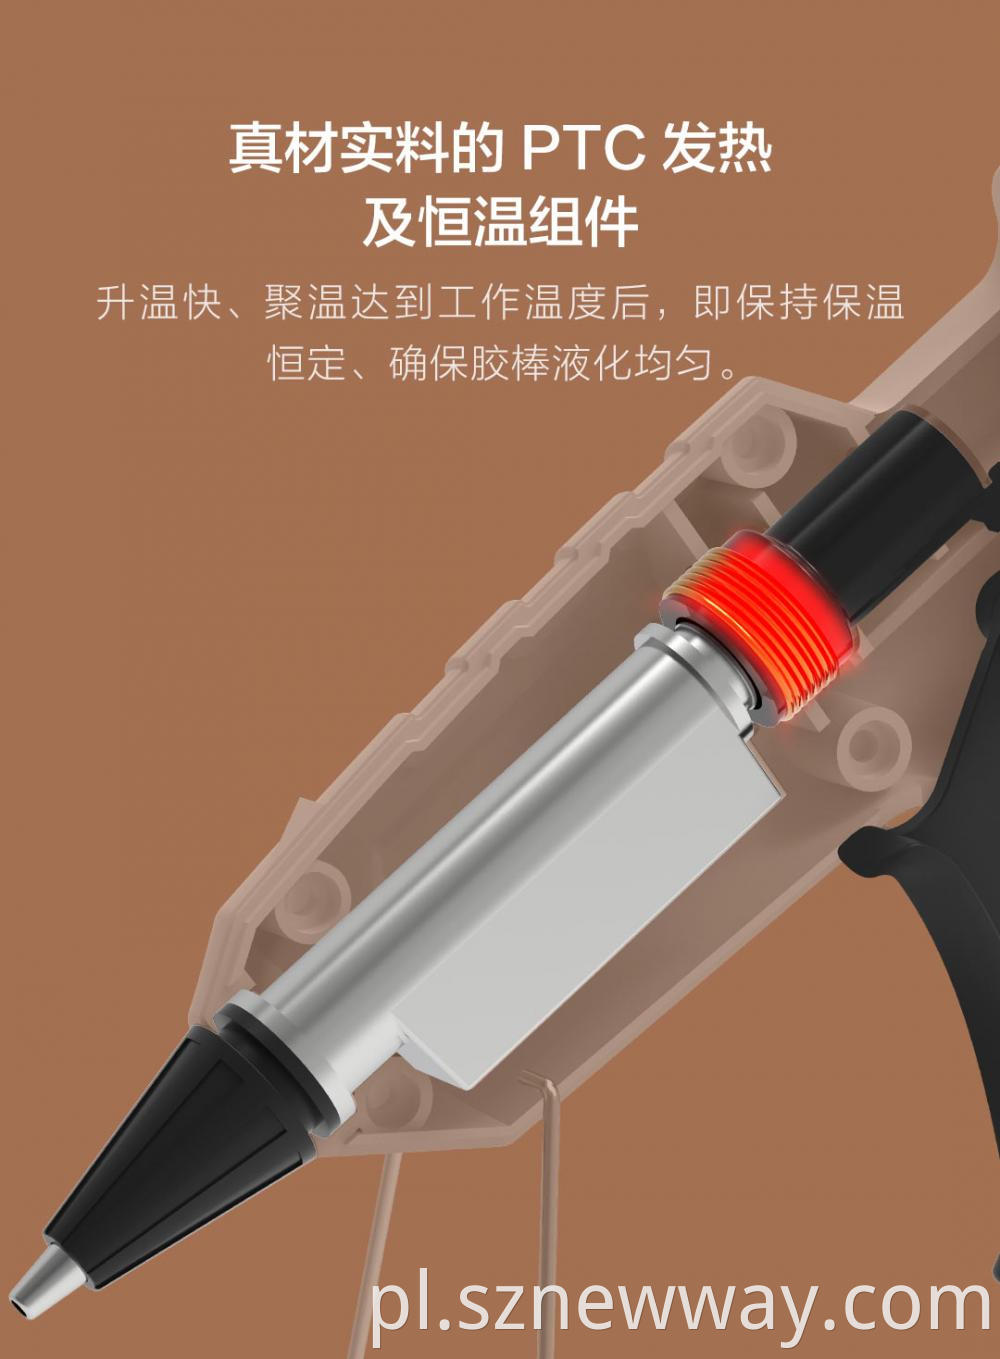 Xiaomi Marsworker Glue Gun